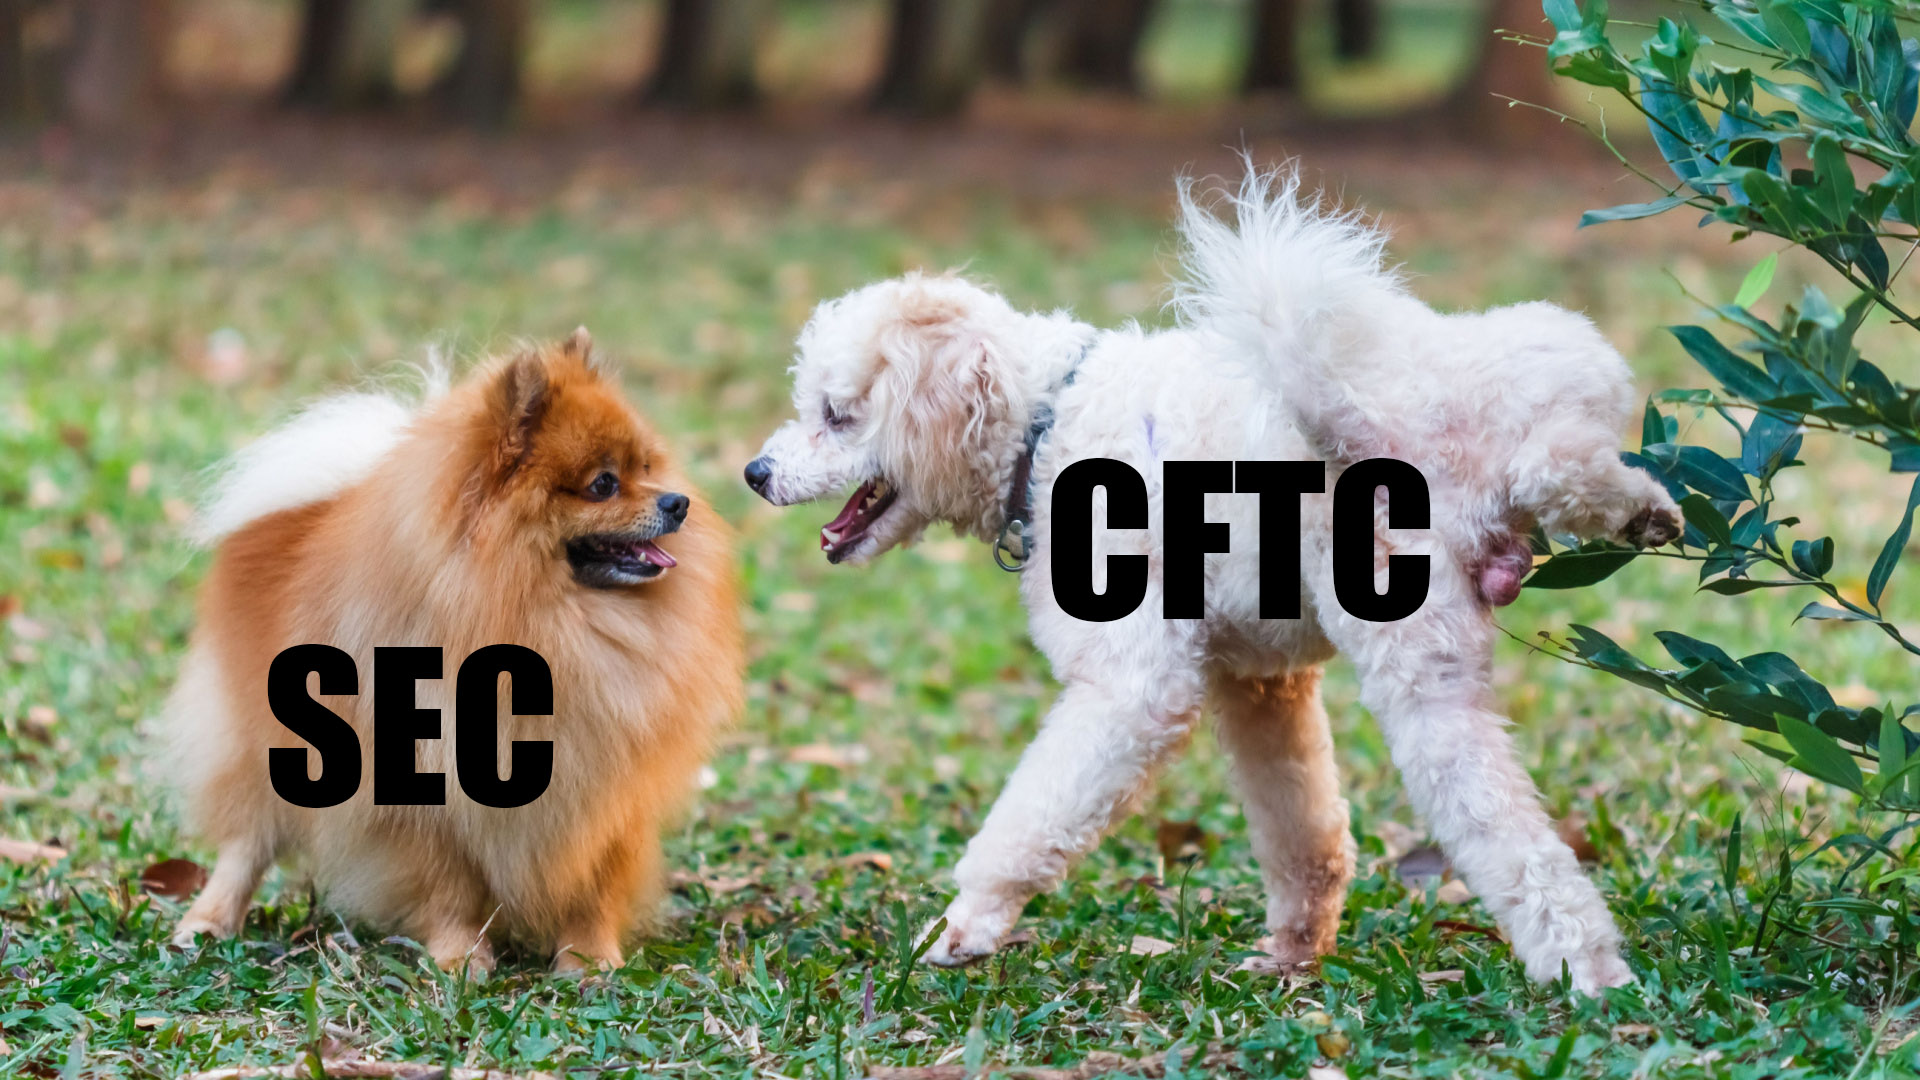 Binance so với CFTC: Một thử nghiệm thực sự hay chỉ là một cuộc chiến quy định?